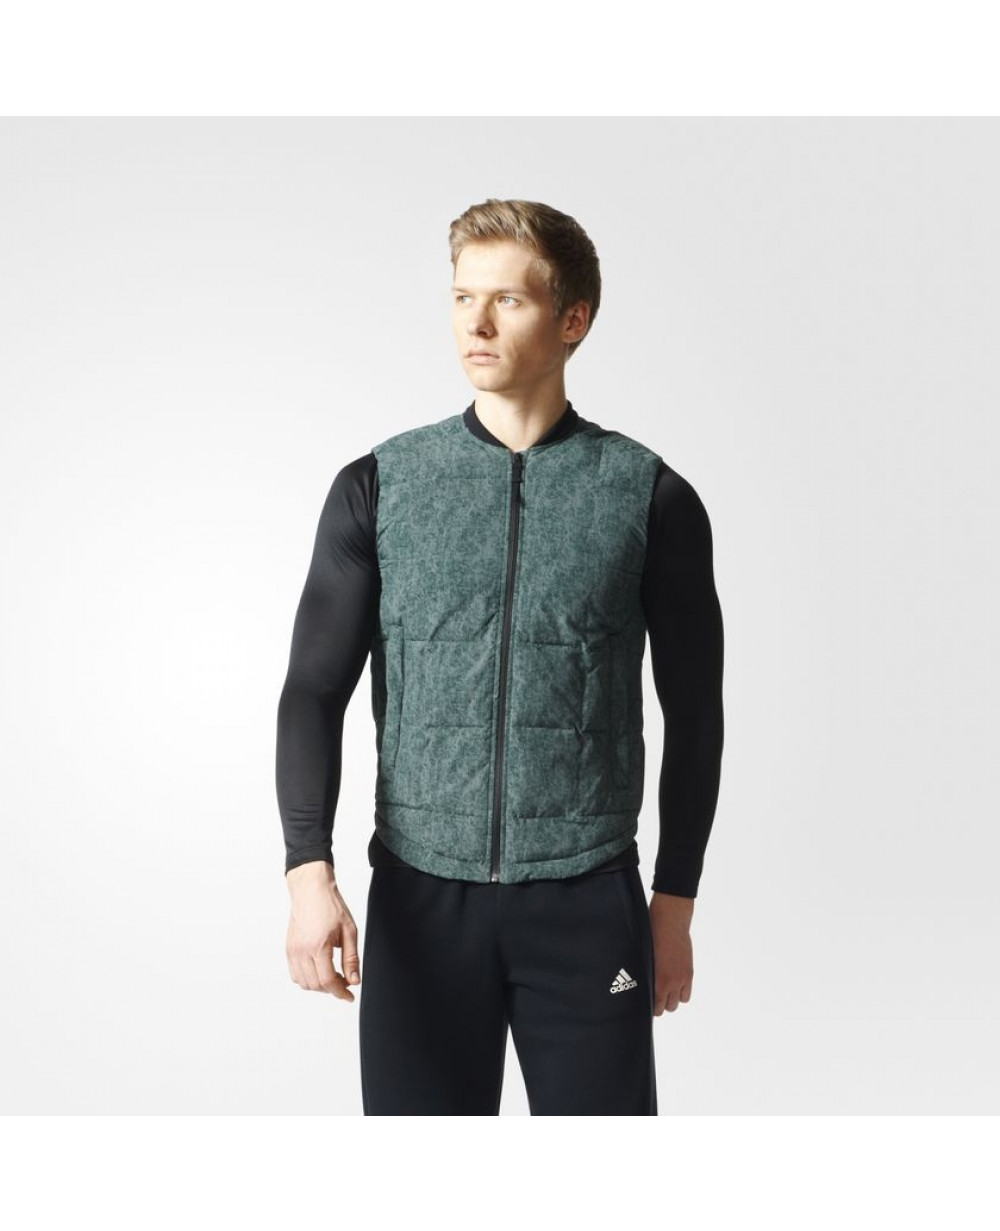 Stevenson bolsillo artículo Adidas Athletics Light Down Half Jacket For Men S94754